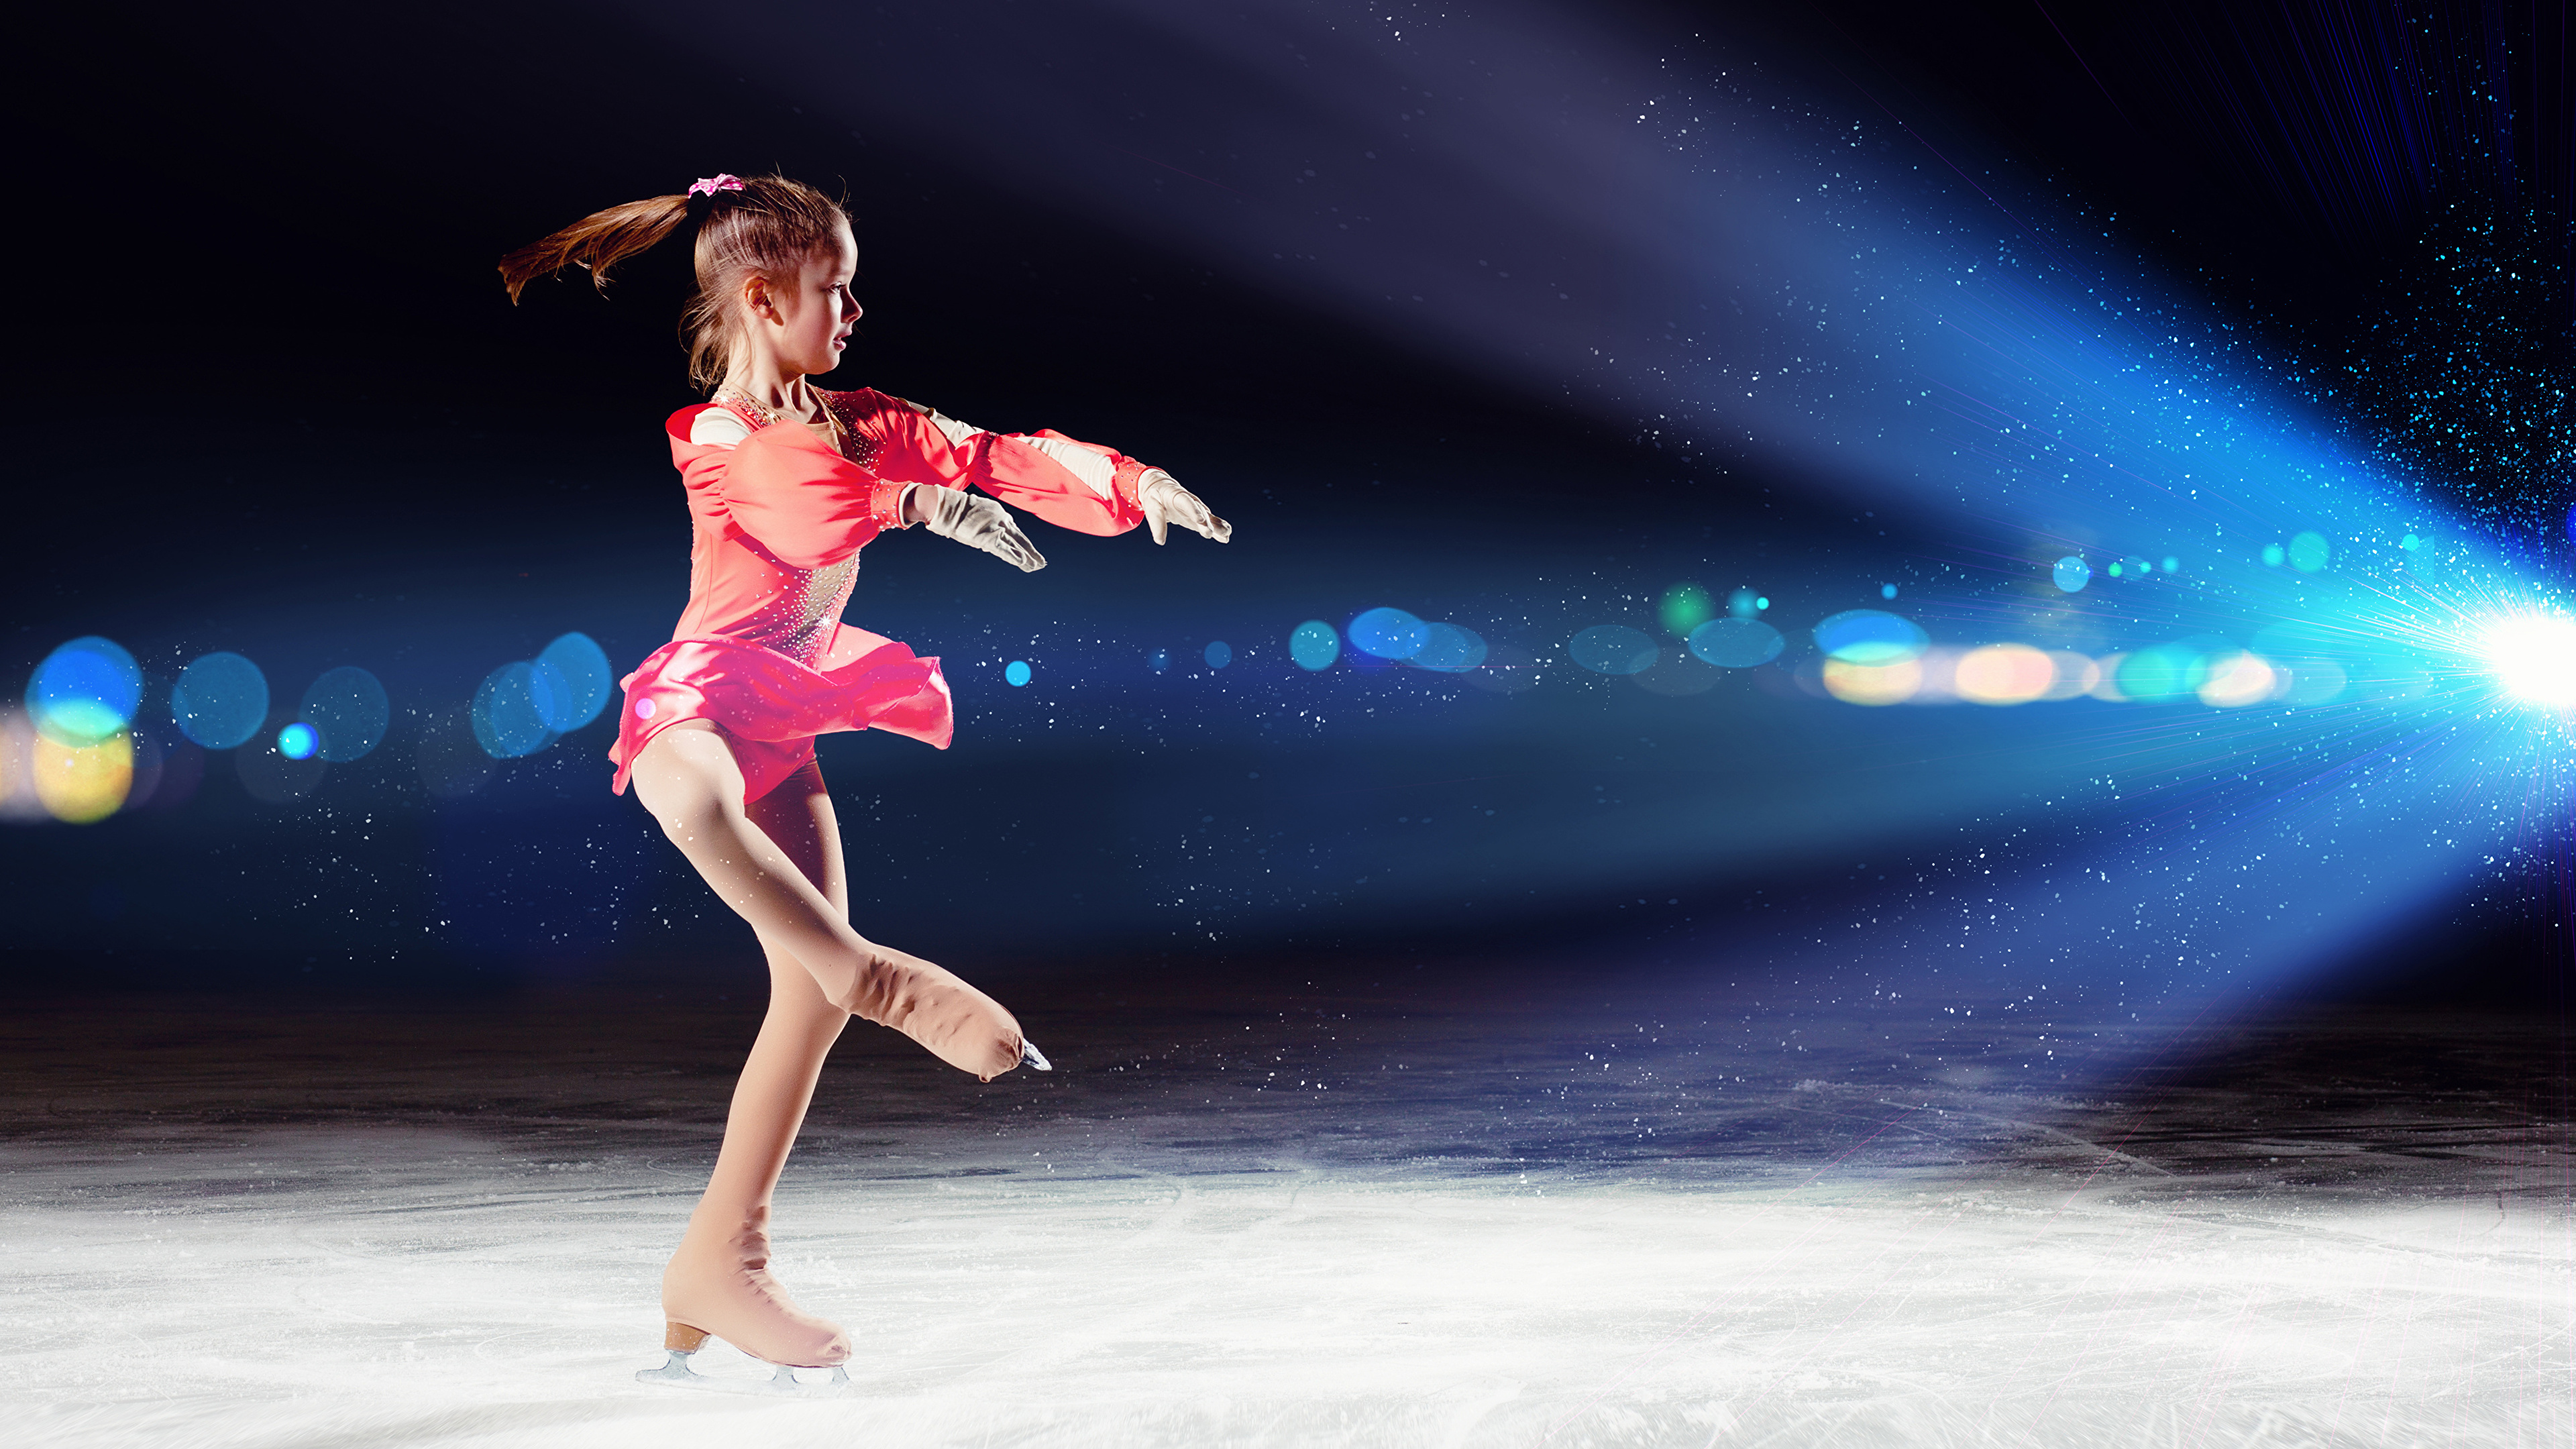 壁紙 3840x2160 小さな女の子 氷 スケート靴 ダンス 子供 ダウンロード 写真